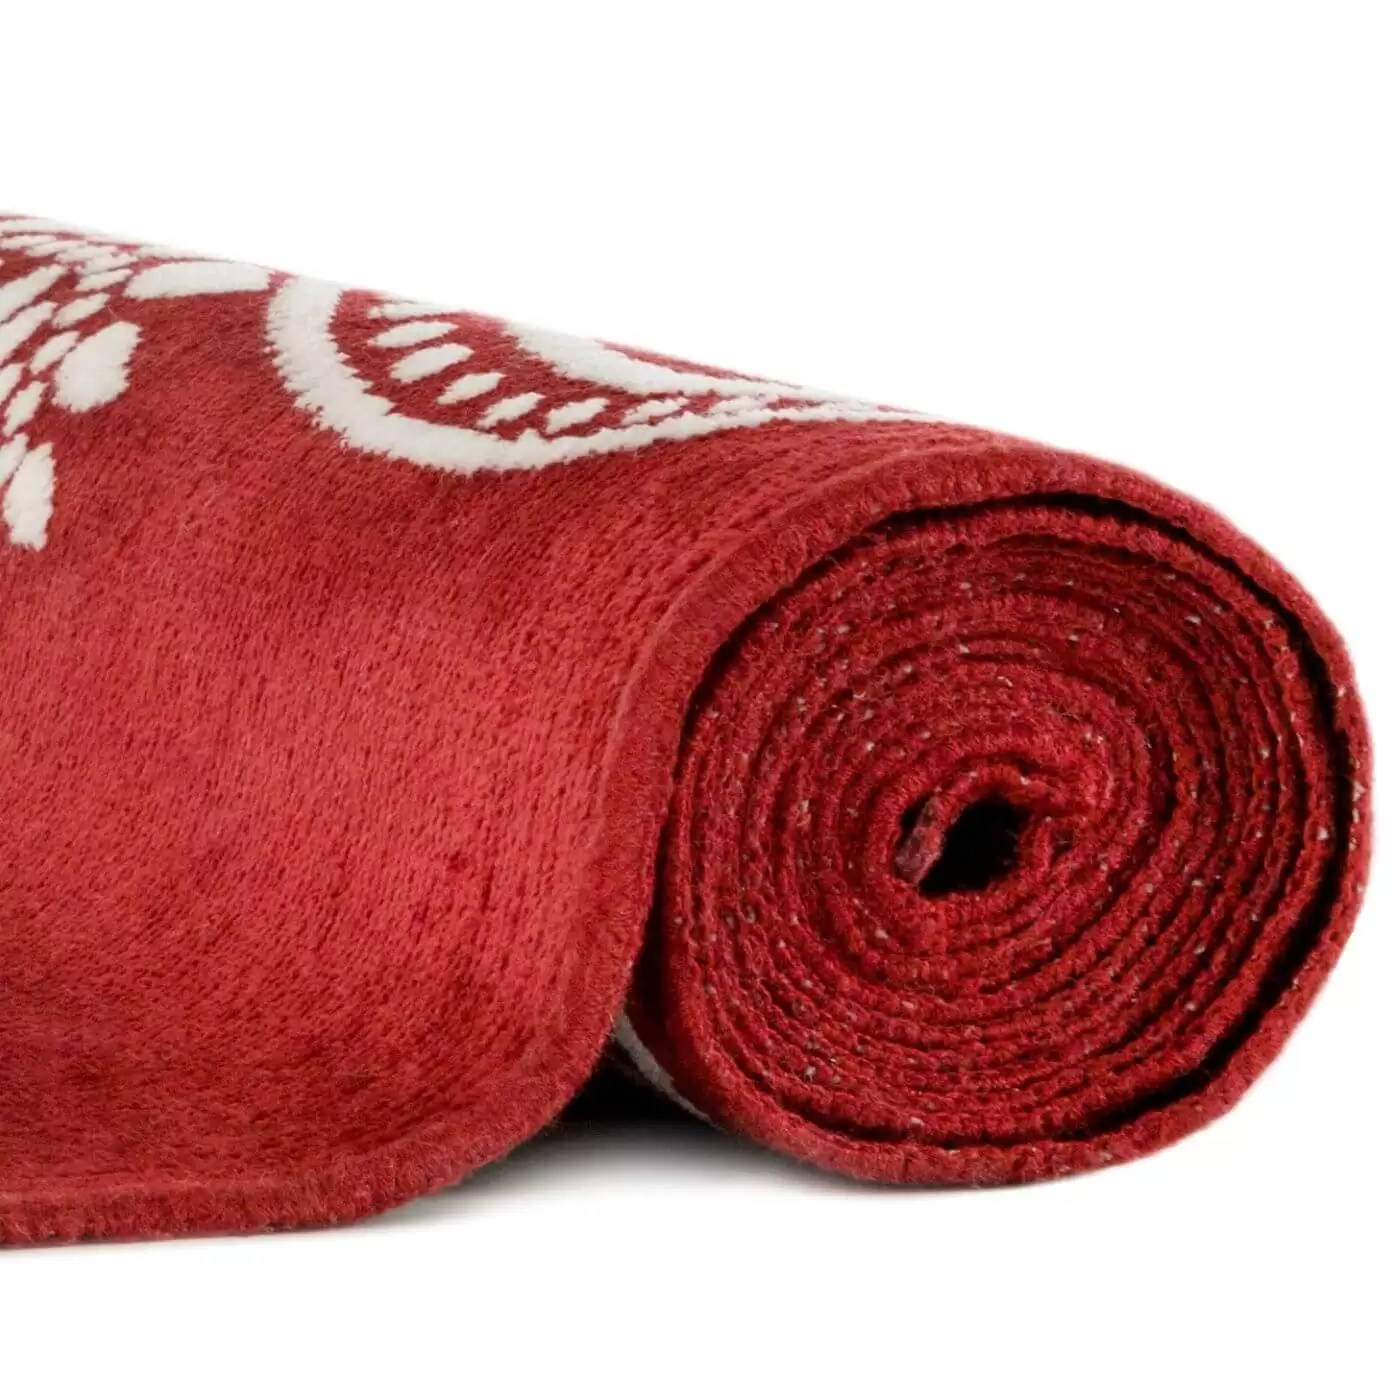 Stylowy dywan SYVÄMARI. Częściowo zwinięty dekoracyjny czerwony dywan stylowy do salonu o bogatym białym wzorze widoczny w zbliżeniu